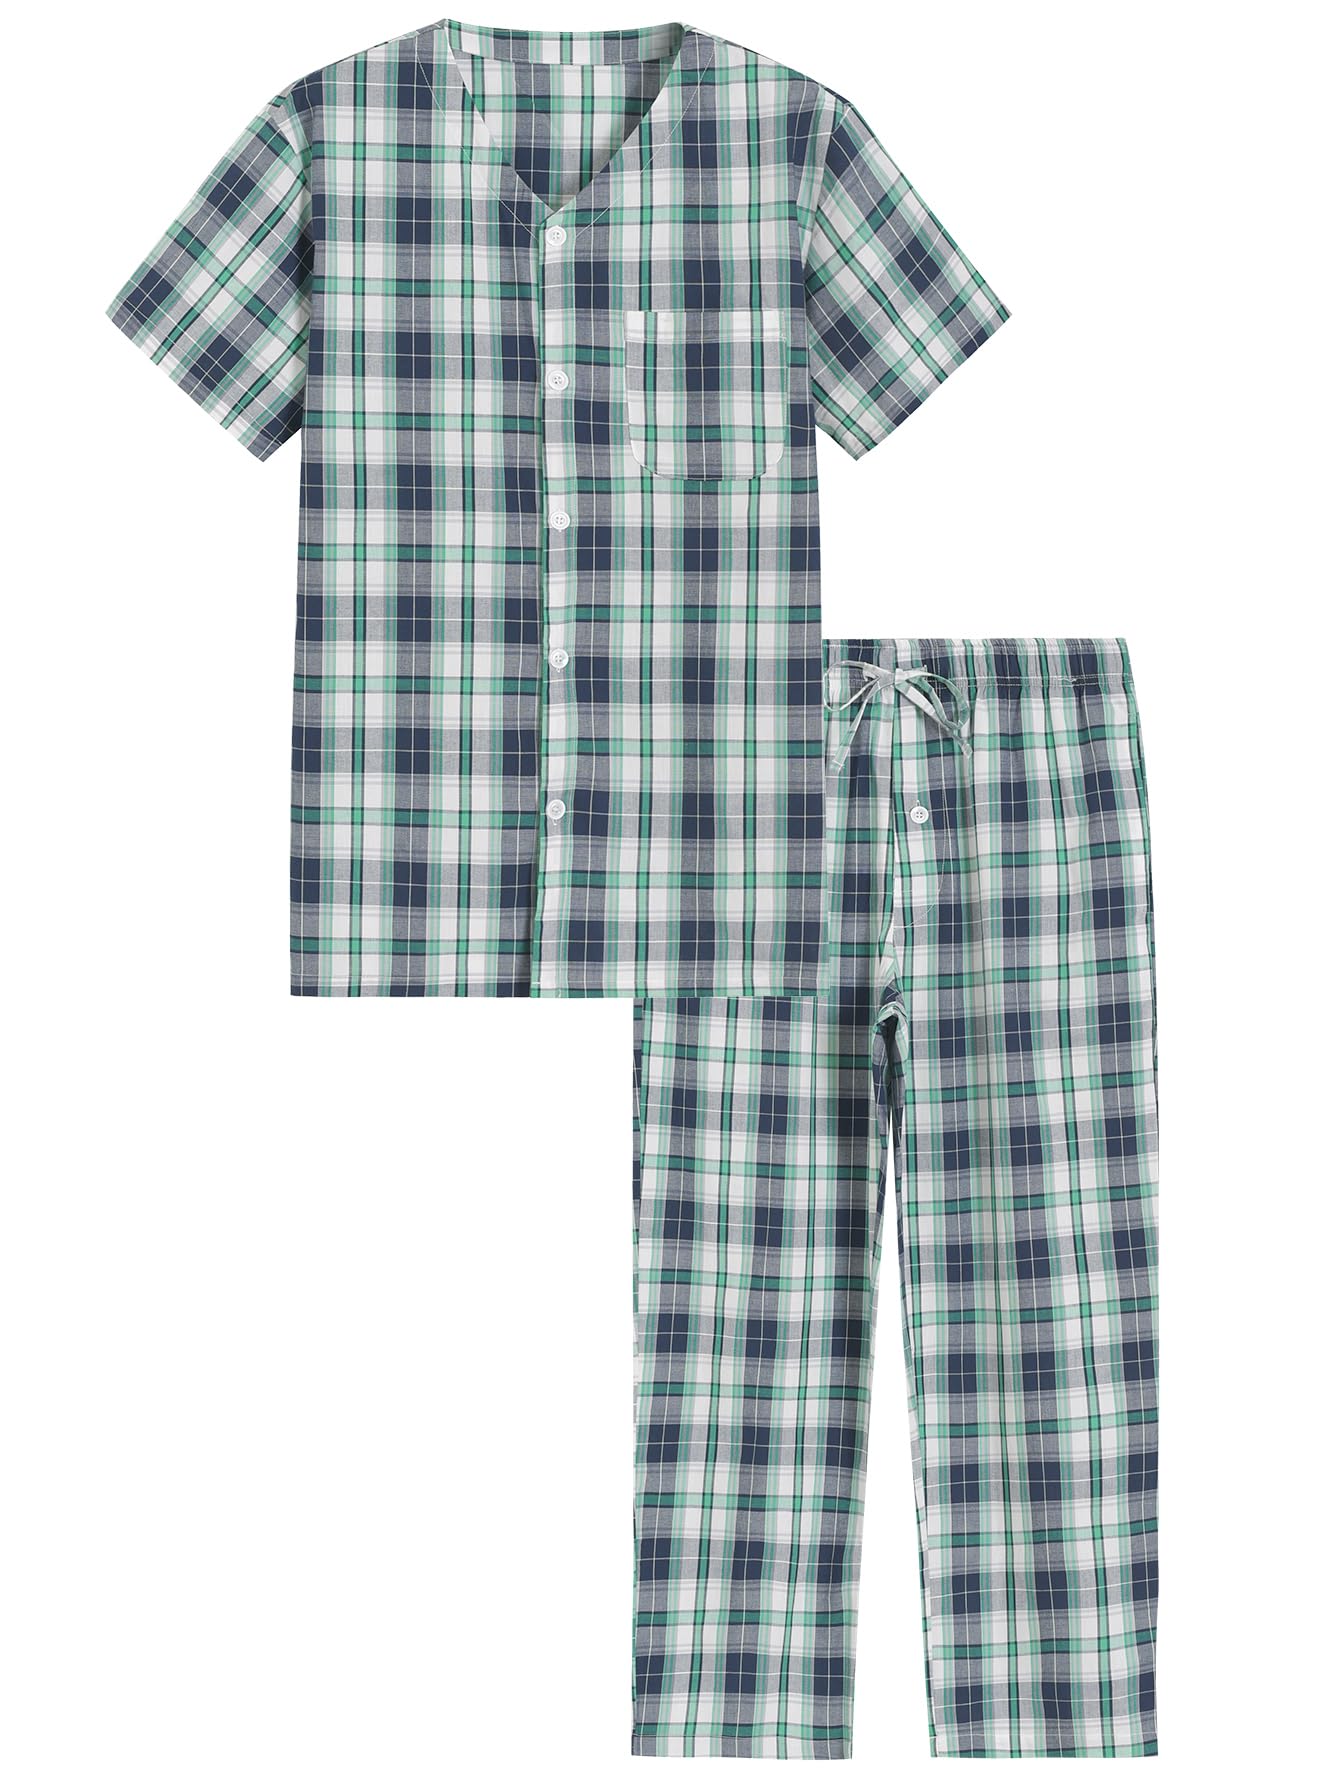 Men's Cotton Pajamas Set Button Up Shirt and Pants for Summer - Latuza